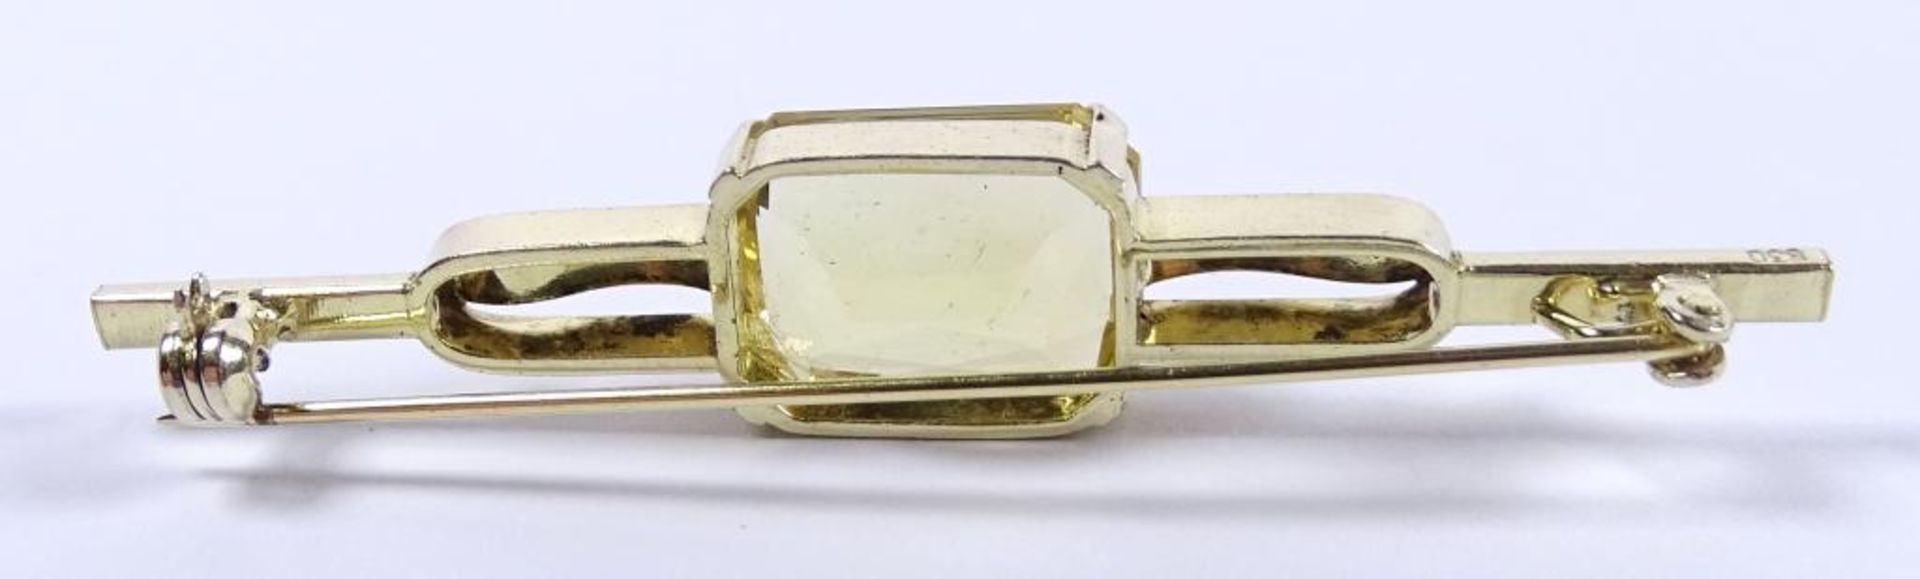 Brosche, Silber -830- vergoldet, mit einem gelben Stein, L-6,5cm, 7,0gr. - Bild 3 aus 3